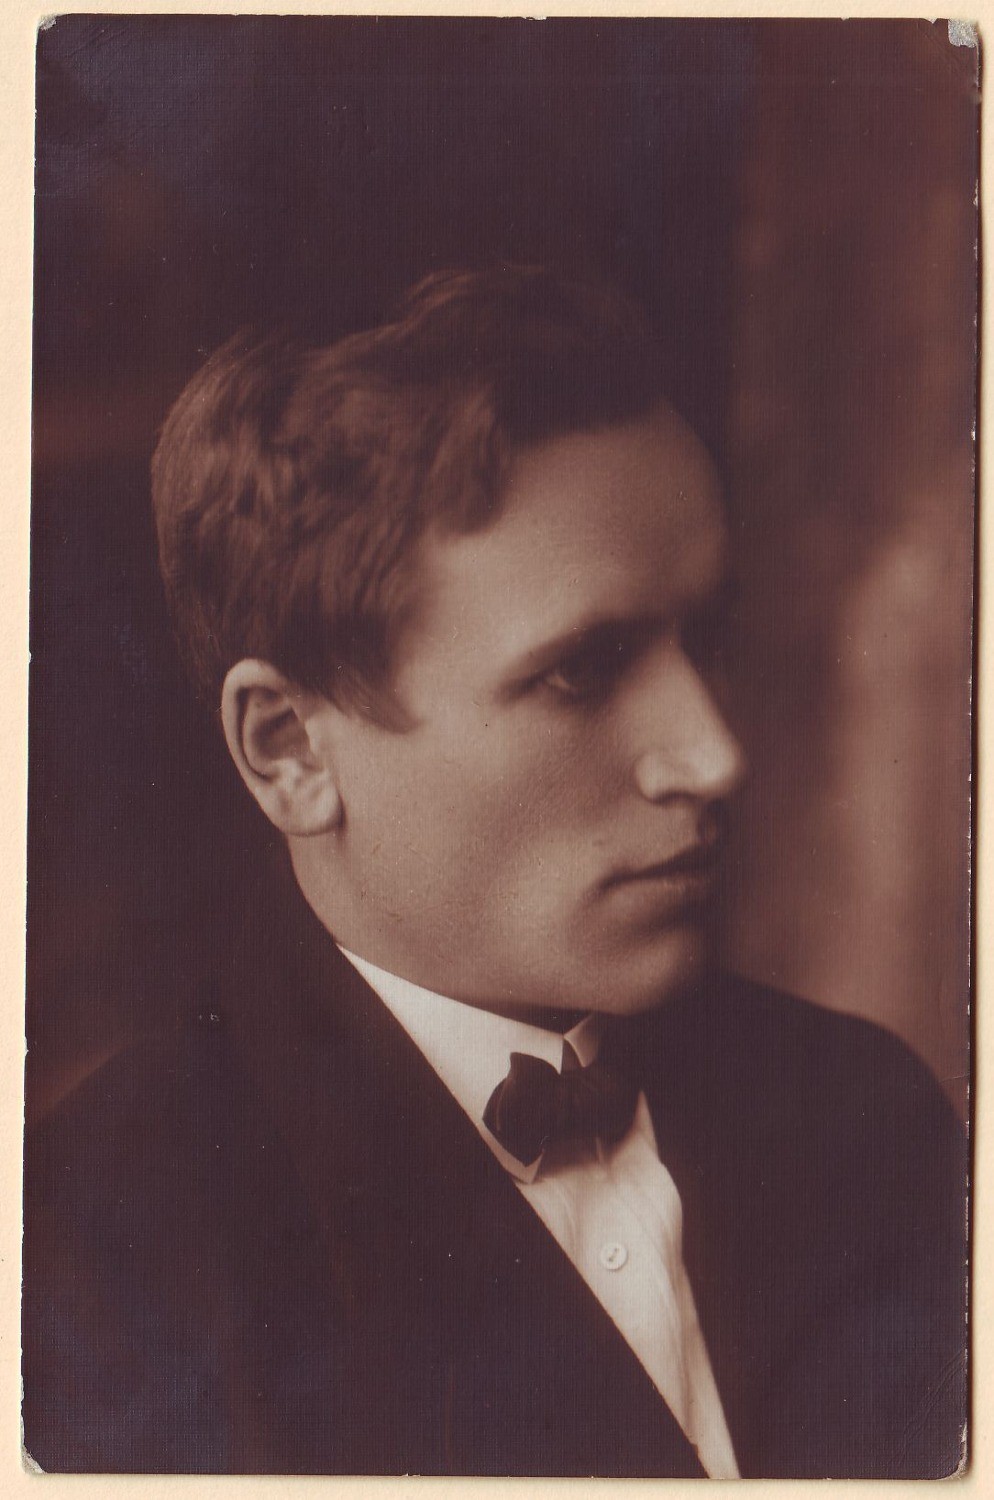 Dramos aktorius Juozas Laucius. Kaunas. 1924 06 13. KMM PMM GEK 9054.